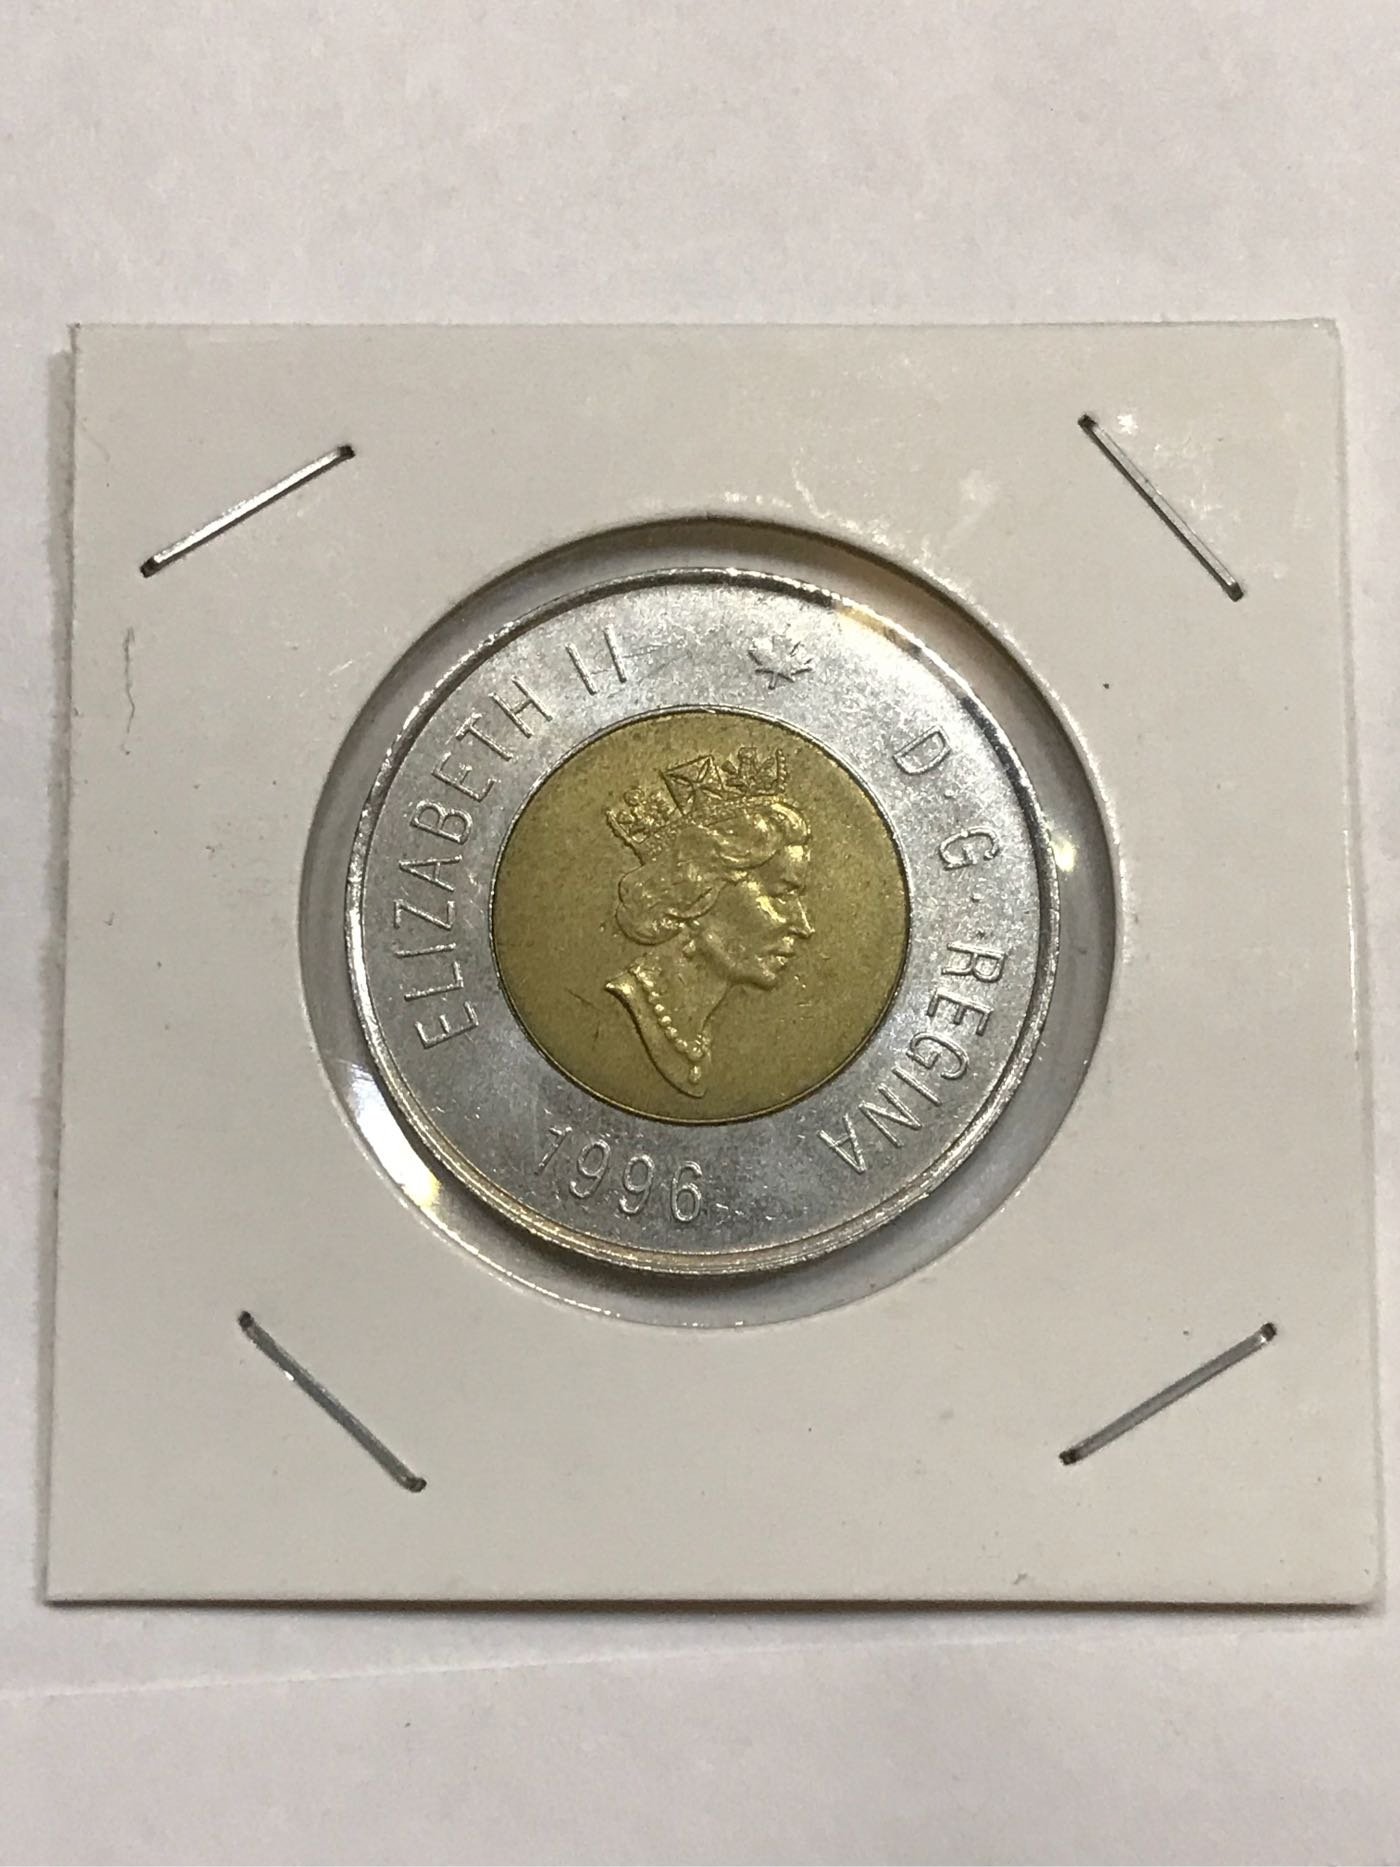 加拿大 CANADA 1996年 伊莉莎白 2世 北極熊 2元 Dollars 雙色 錢幣 古玩 藝術品 收藏品 紀念幣